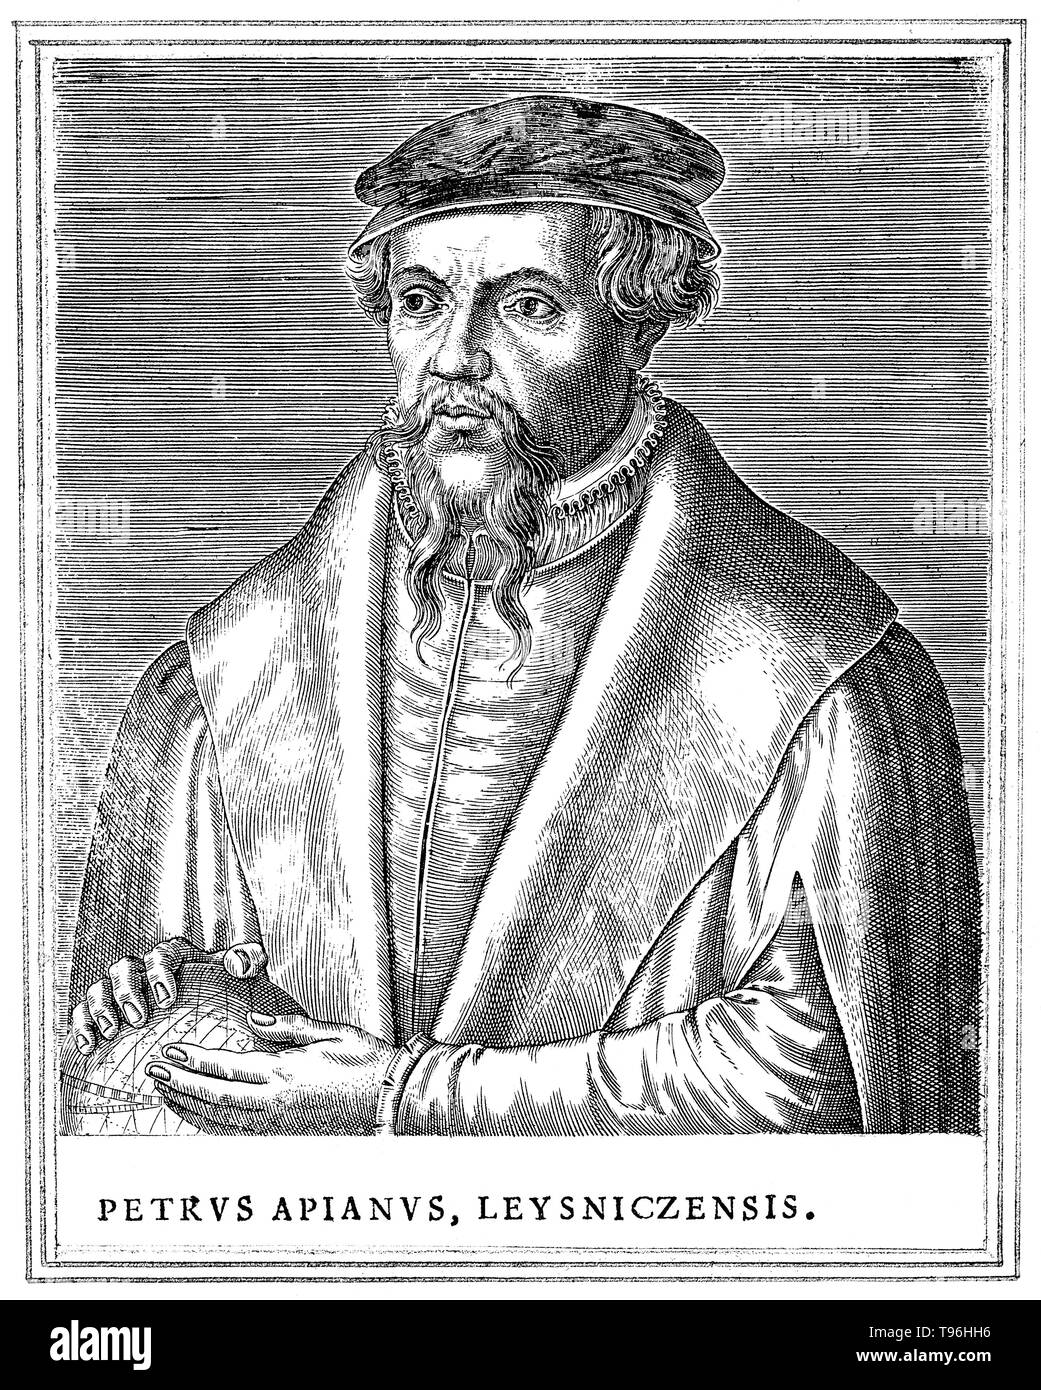 Petrus Apianus (16 avril 1495 - 21 avril 1552) était un humaniste allemand, connu pour ses travaux en mathématiques, l'astronomie et la cartographie. En 1524, il a produit son Cosmographicus liber, un travail sur l'astronomie et la navigation qui était de voir au moins 30 réimpressions en 14 langues. En 1527, il a publié une variante de Pascal's triangle, et en 1534 une table de Sines. En 1531, il a fait observer une comète et découvert qu'une queue de la comète toujours point loin du soleil. Banque D'Images